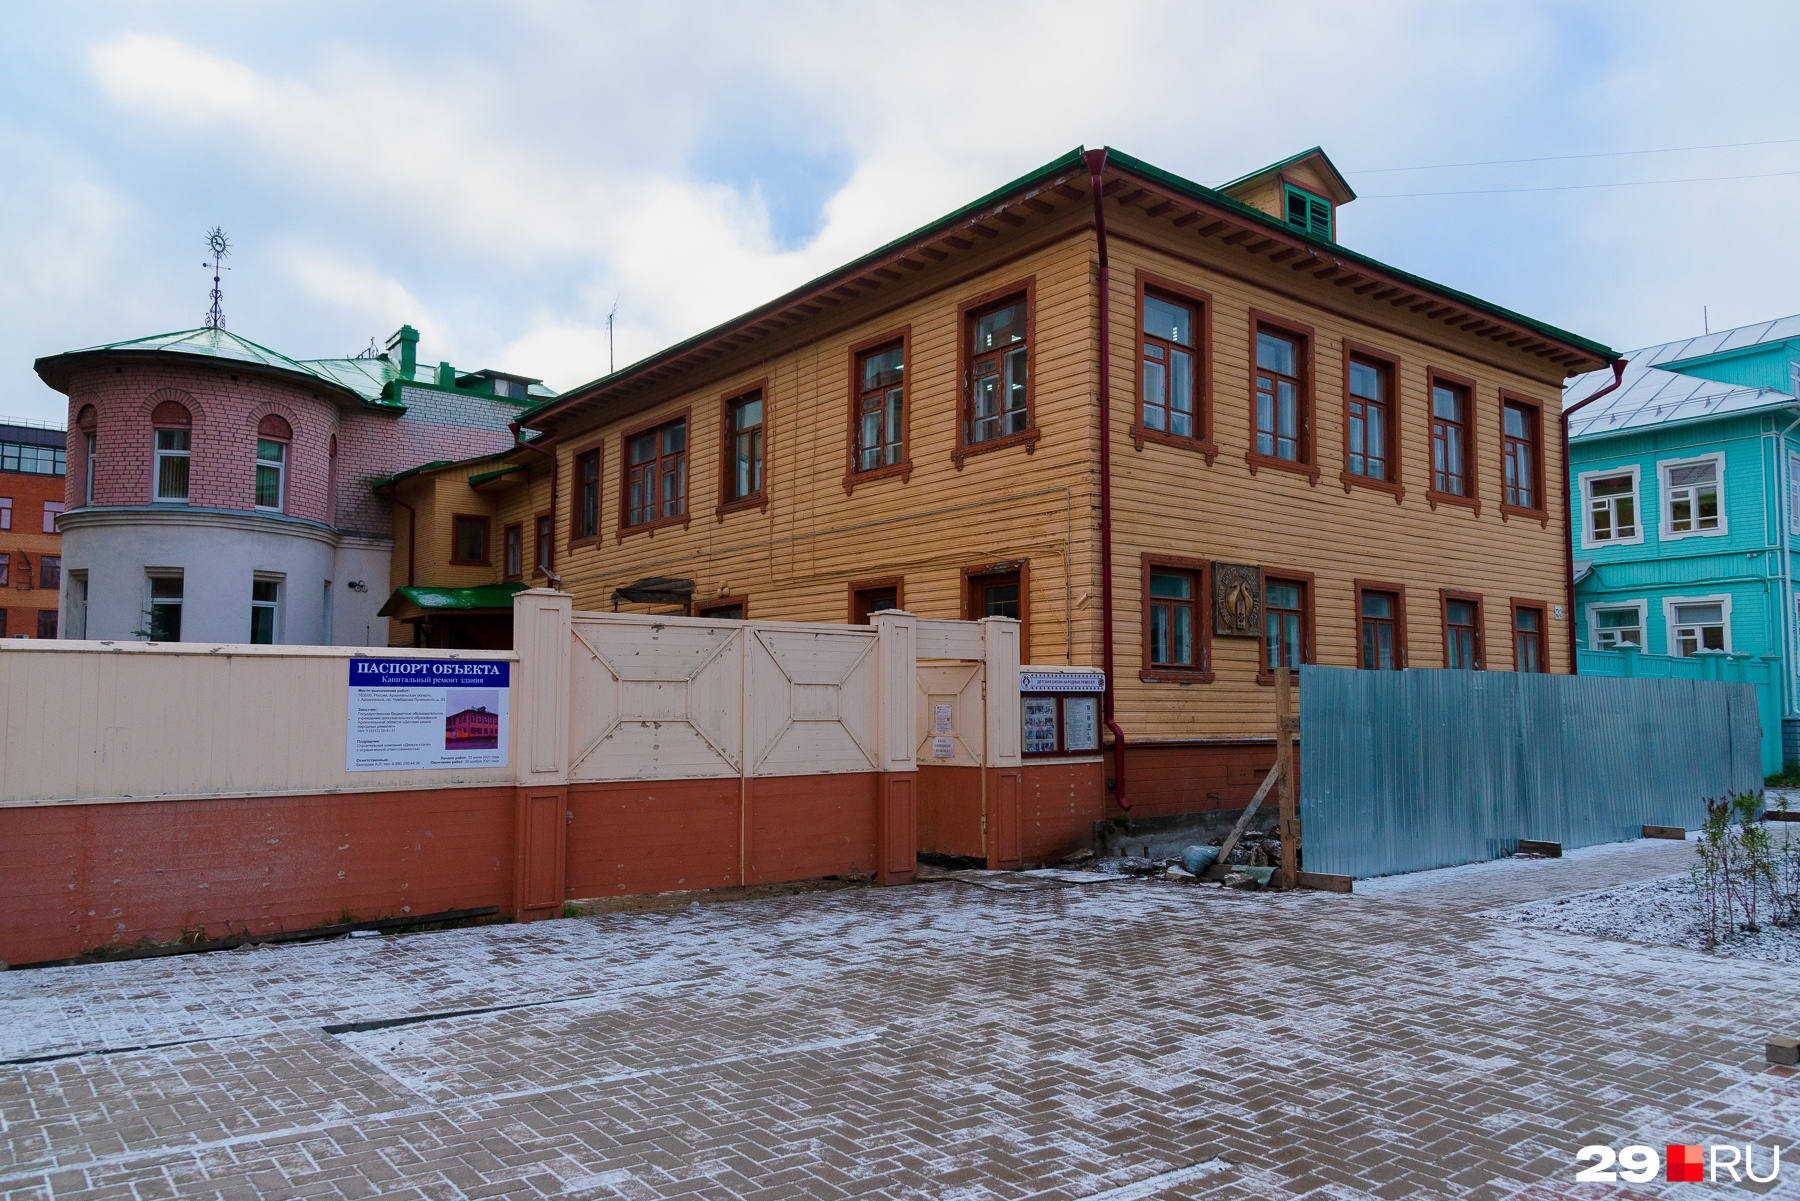 Школу народных ремесел не стали красить, потому что это не жилой дом. Но на ее ремонт <a href="https://29.ru/text/gorod/2021/07/08/70014122/" class="_" target="_blank">заключили контракт</a> на 19,5 миллионов рублей